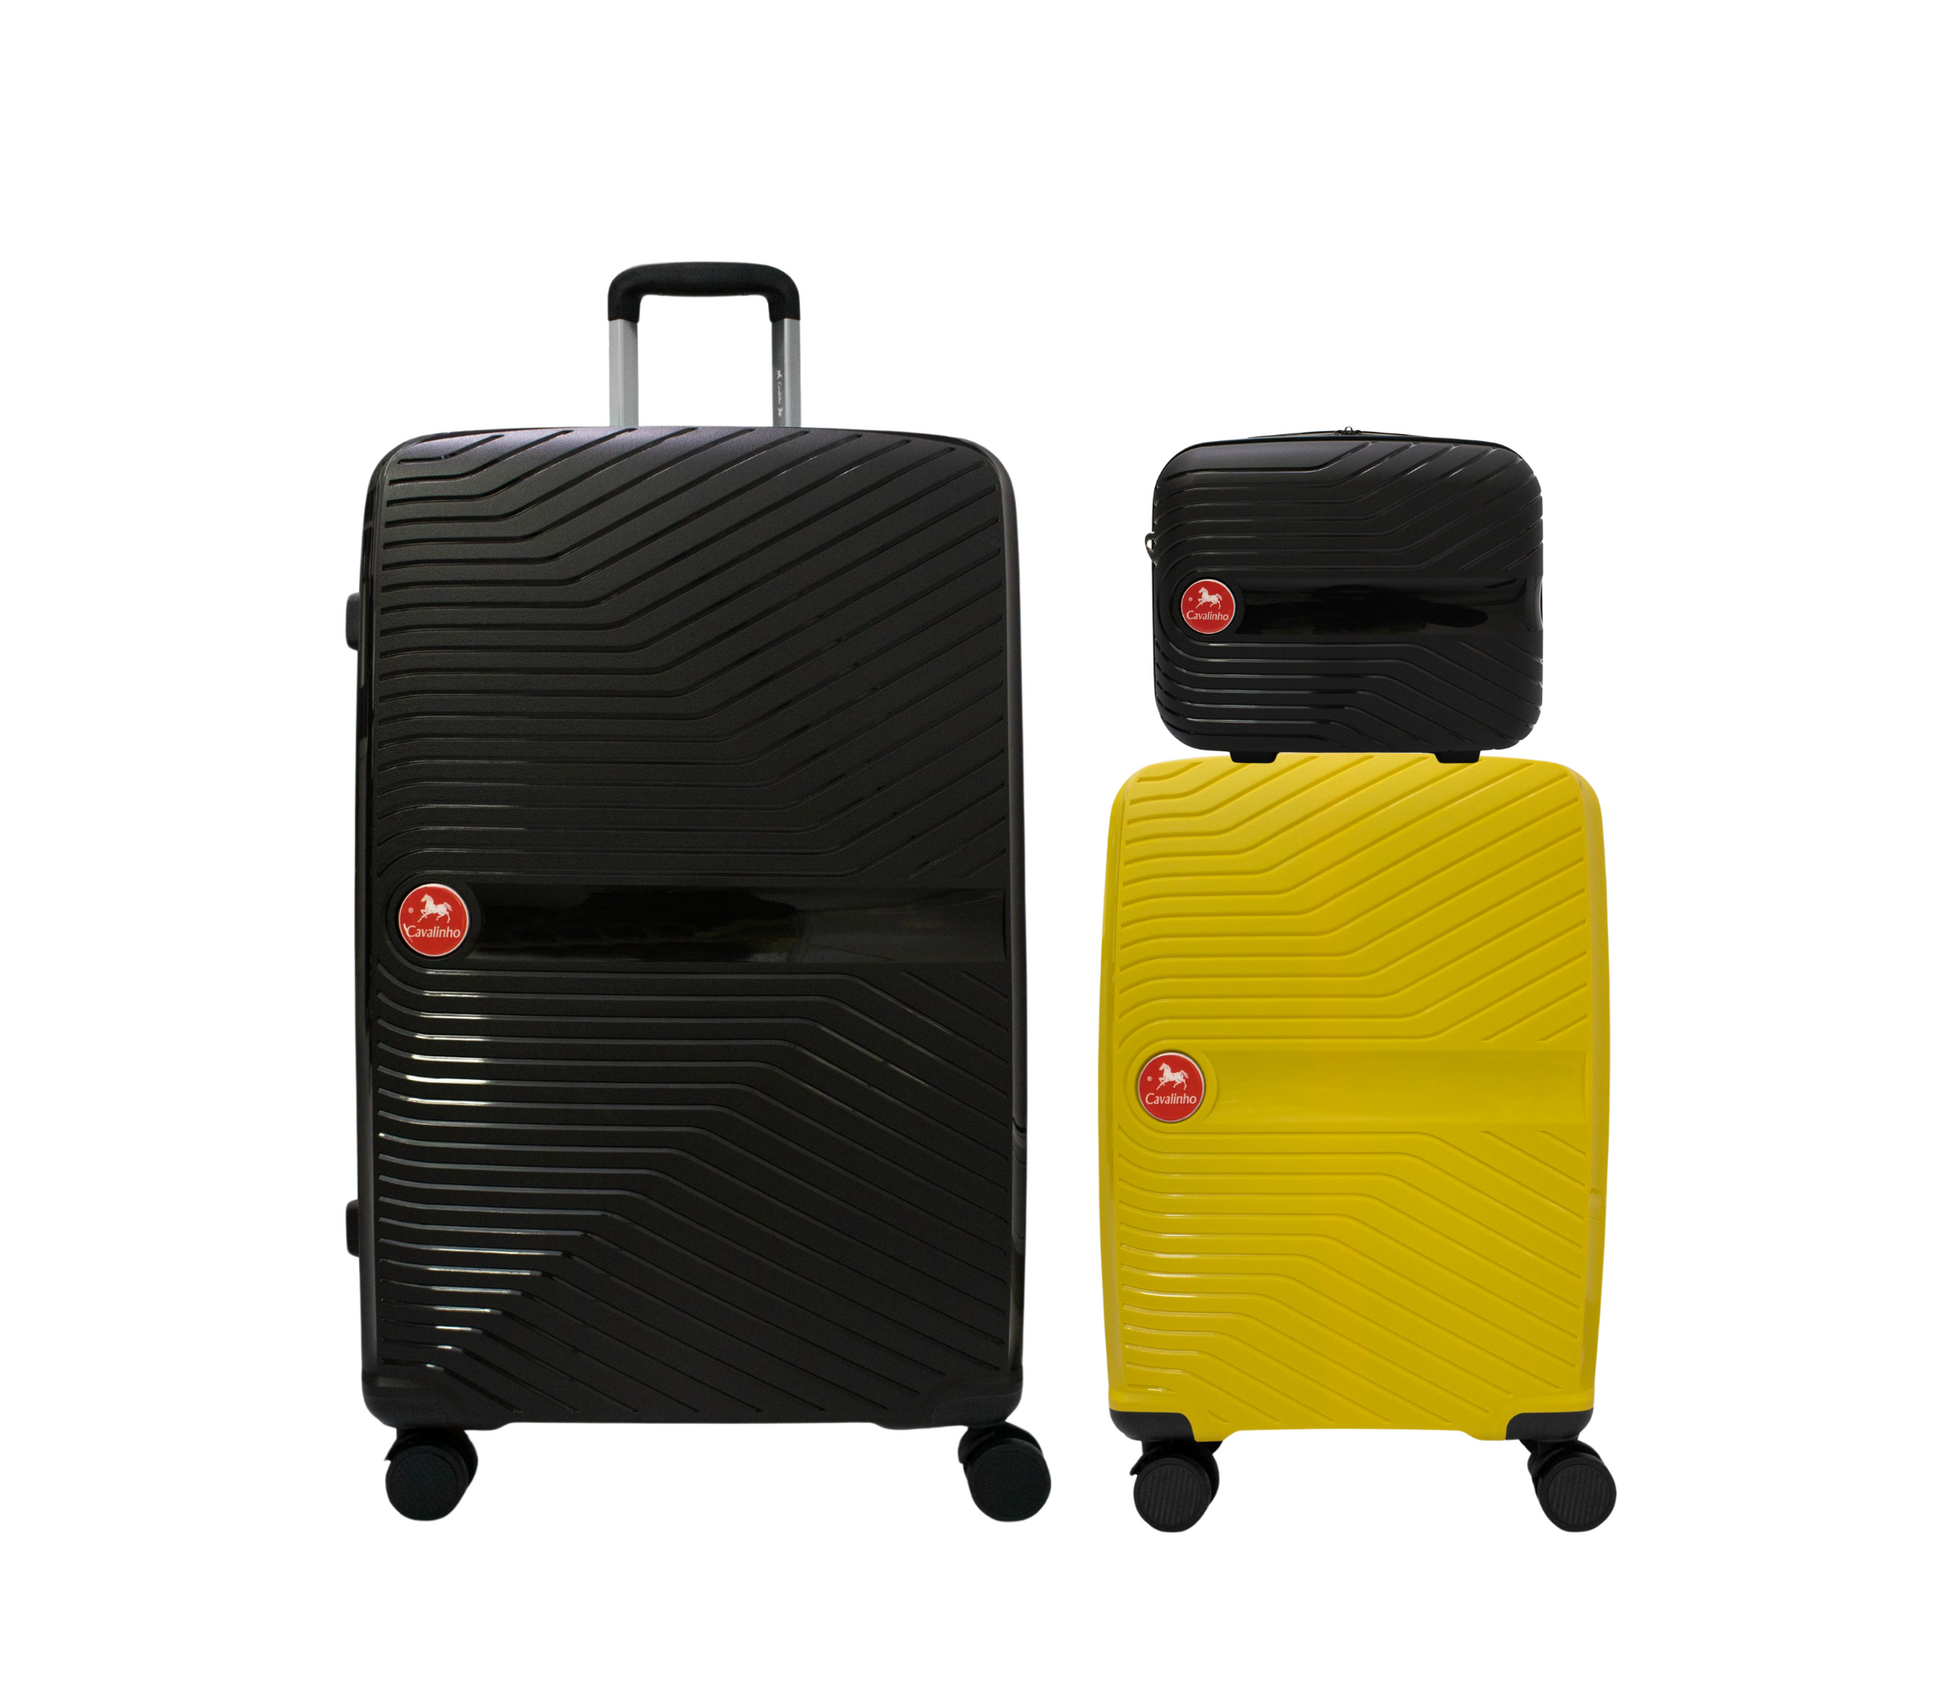 #color_ Black Yellow Black | Cavalinho Canada & USA Colorful 3 Piece Luggage Set (15", 19" & 28") - Black Yellow Black - 68020004.010801.S151928._1